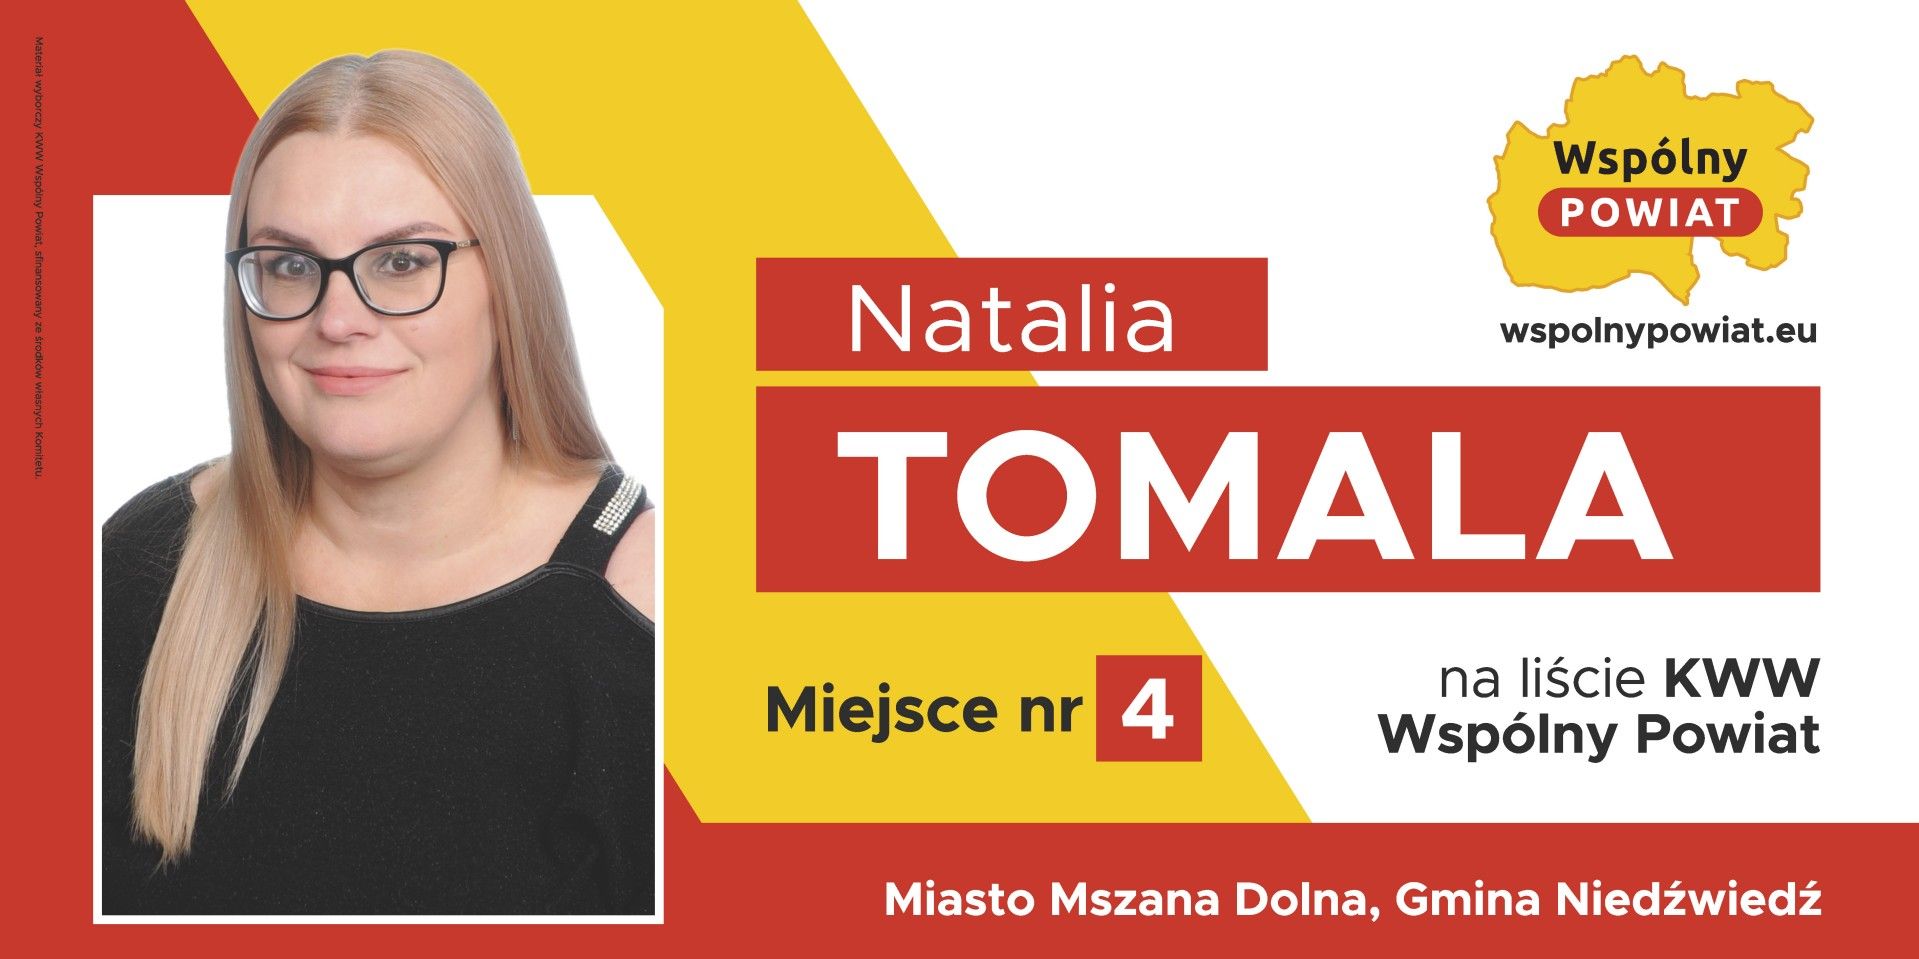 Natalia Tomala